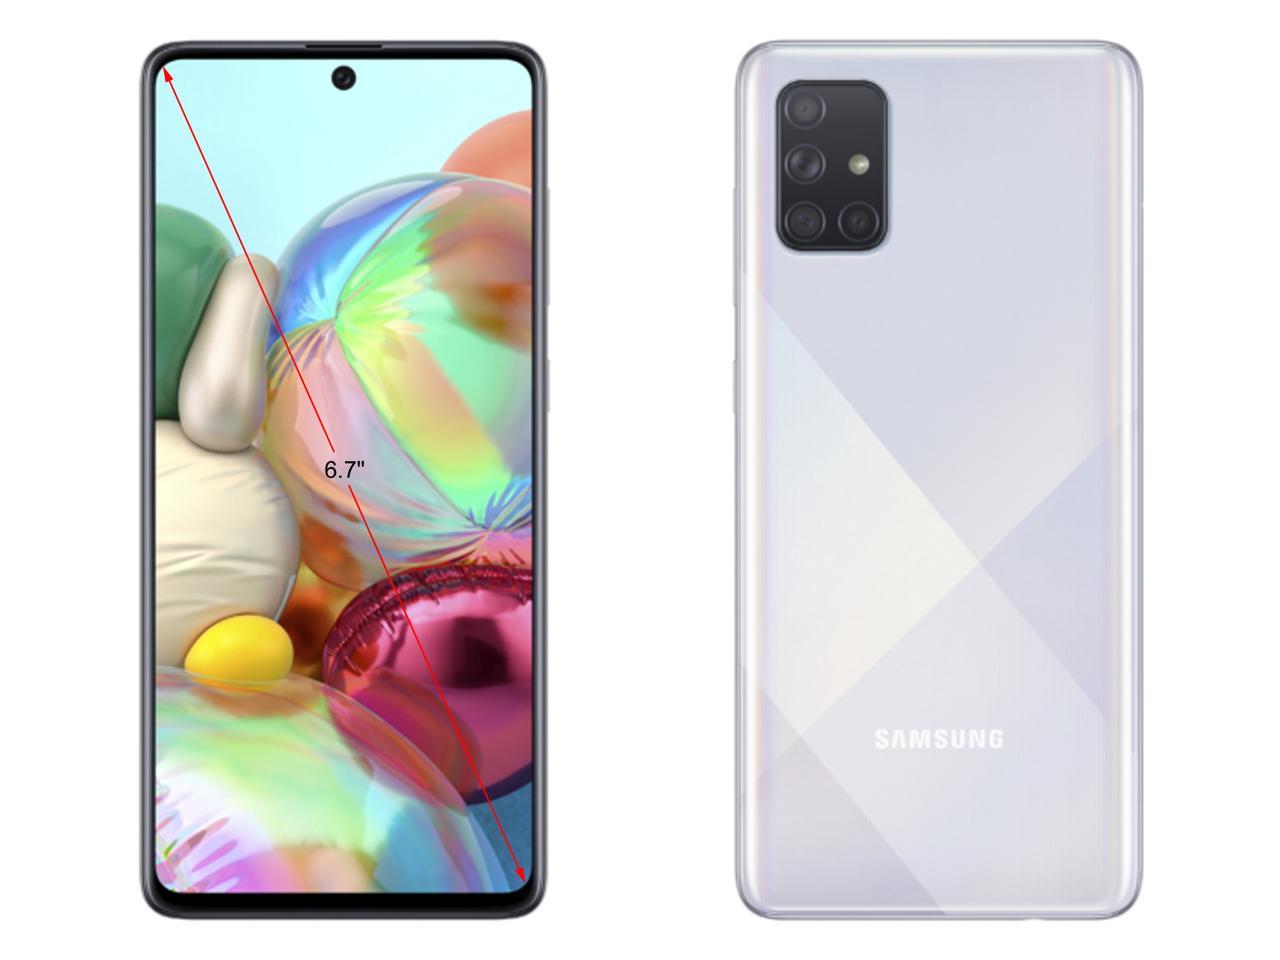 Samsung Galaxy A71 (A715F/DS) - Dual SIM - Prism Crush Black - Unlocked - International Version w/Seller Provided Warranty